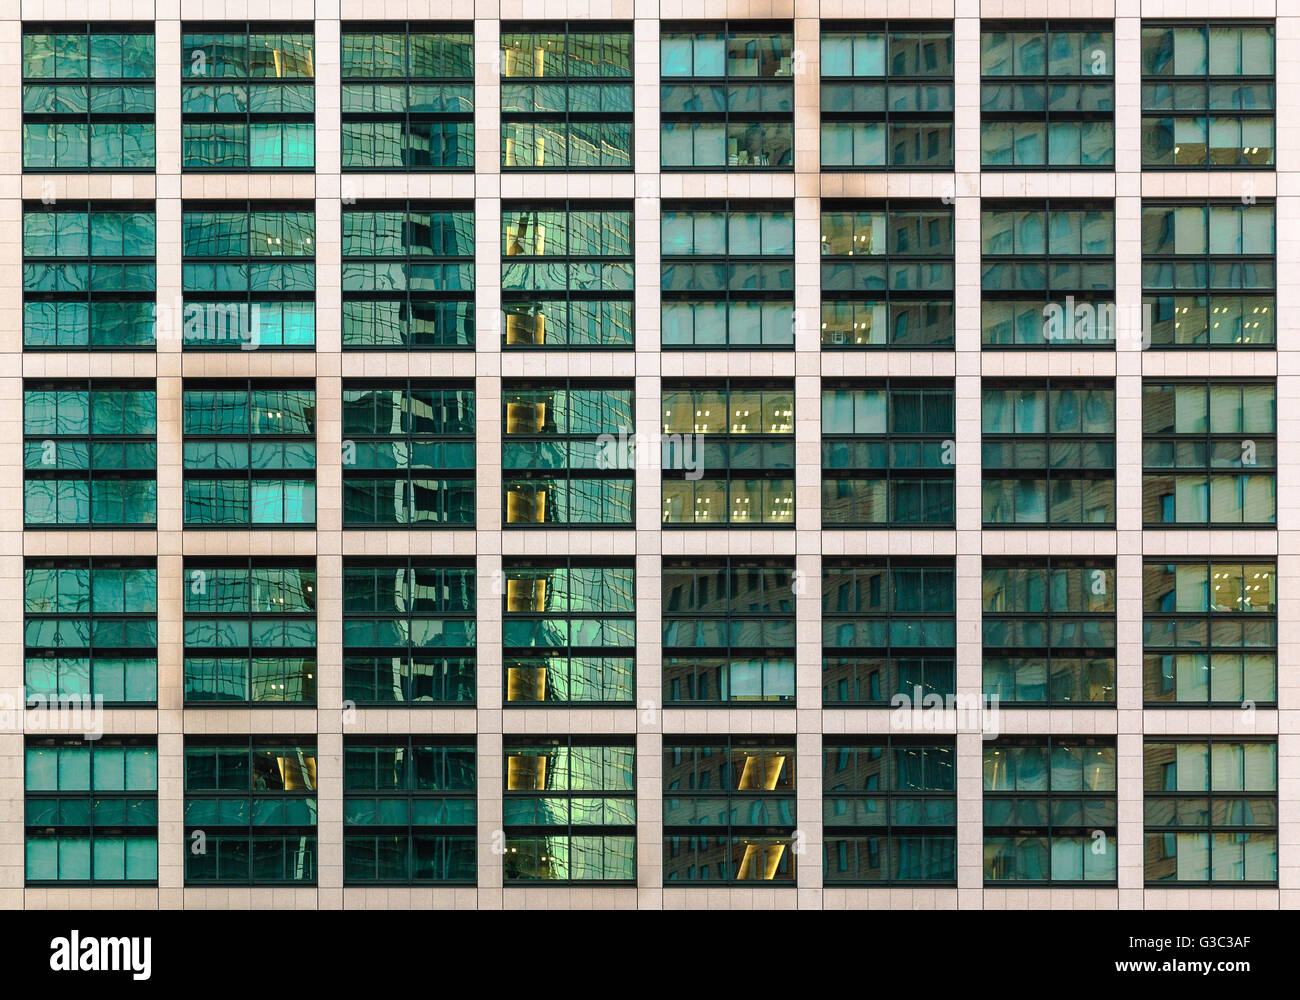 Direkten Blick auf ein Gebäude im Office-Bereich von Shimbashi, Tokio, 8 x 5 x 12 Fenster bei Sonnenuntergang Stunde angezeigt. Stockfoto